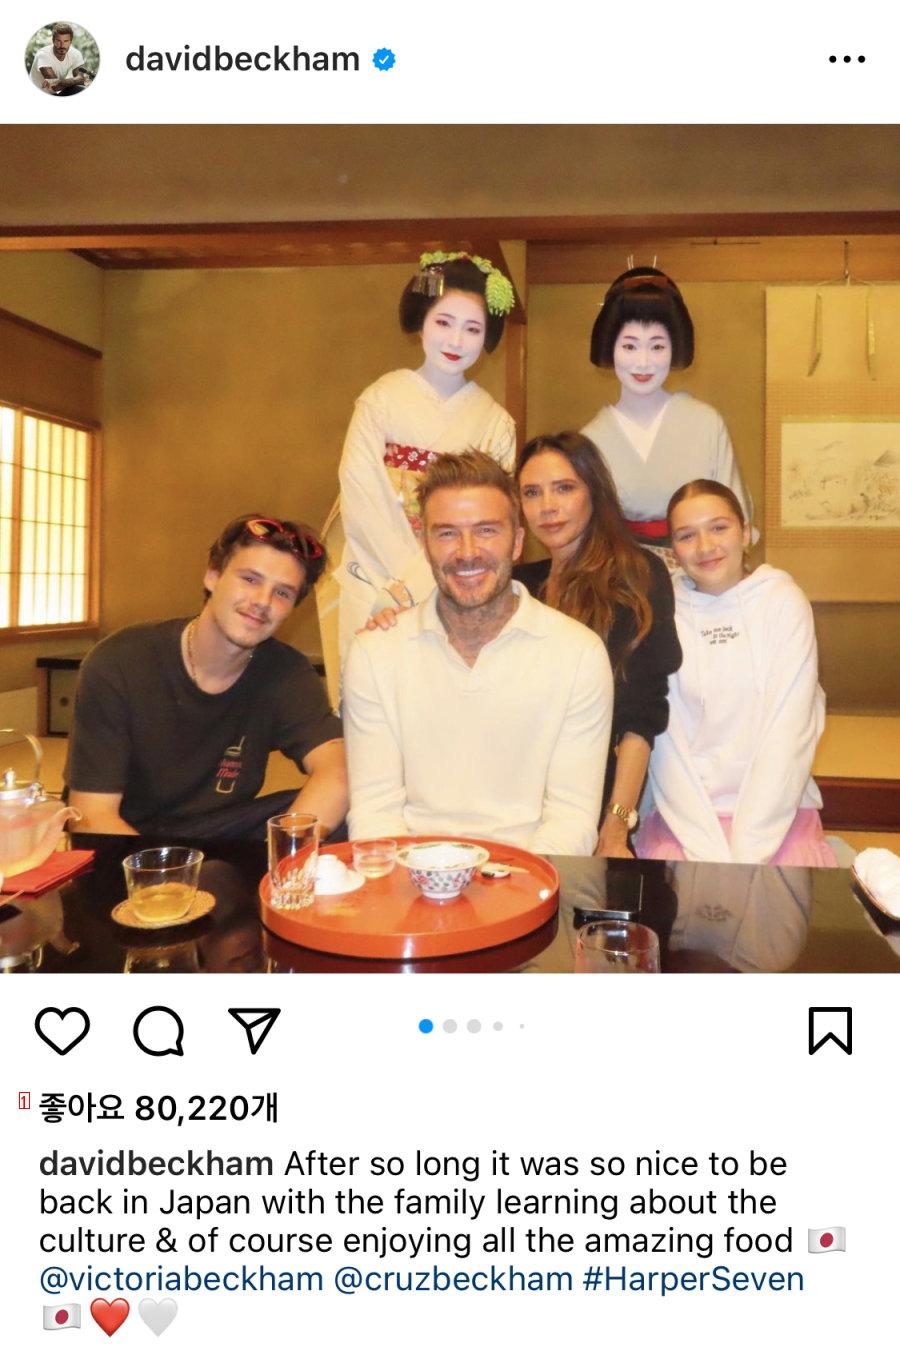 ベッカム家族、日本旅行に行きましたね